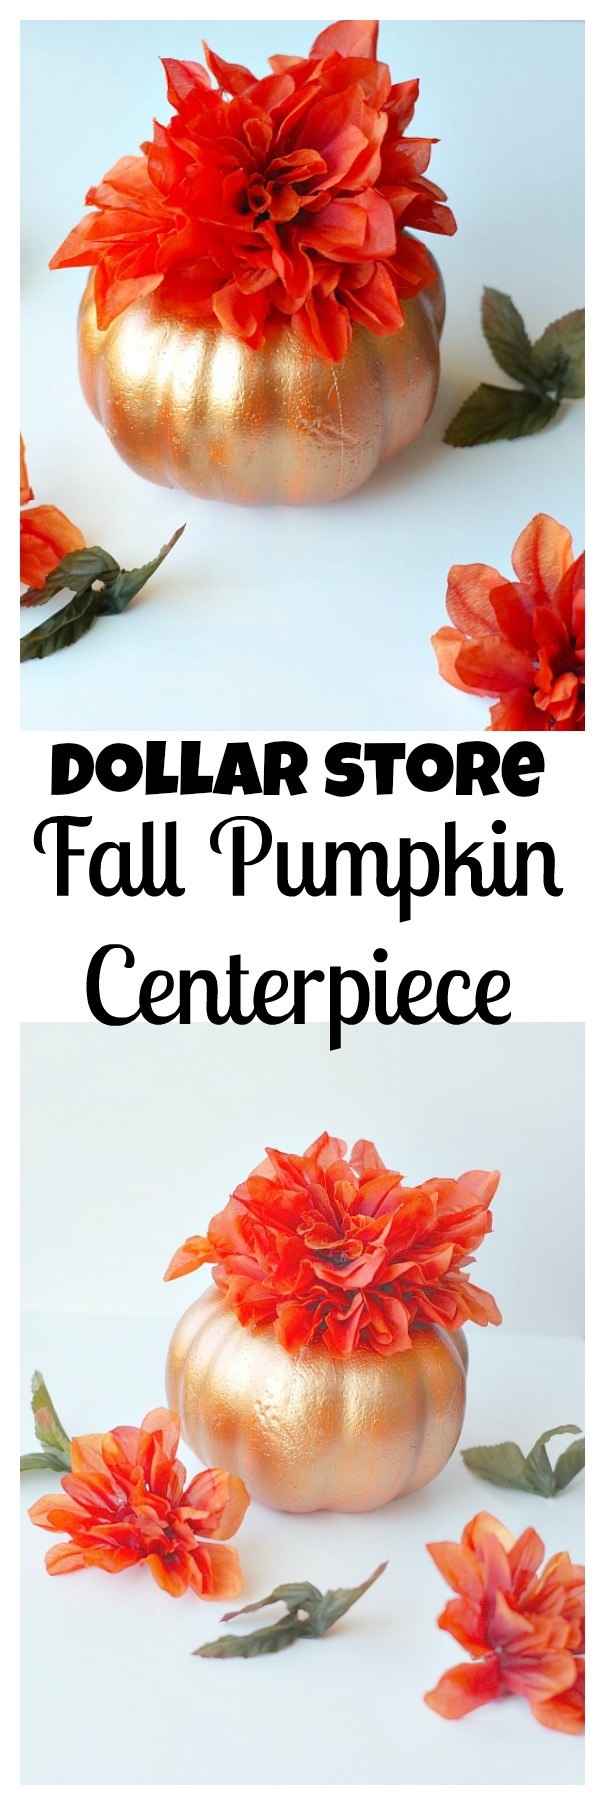 dollar-store-fall-pumpkin-centerpiece